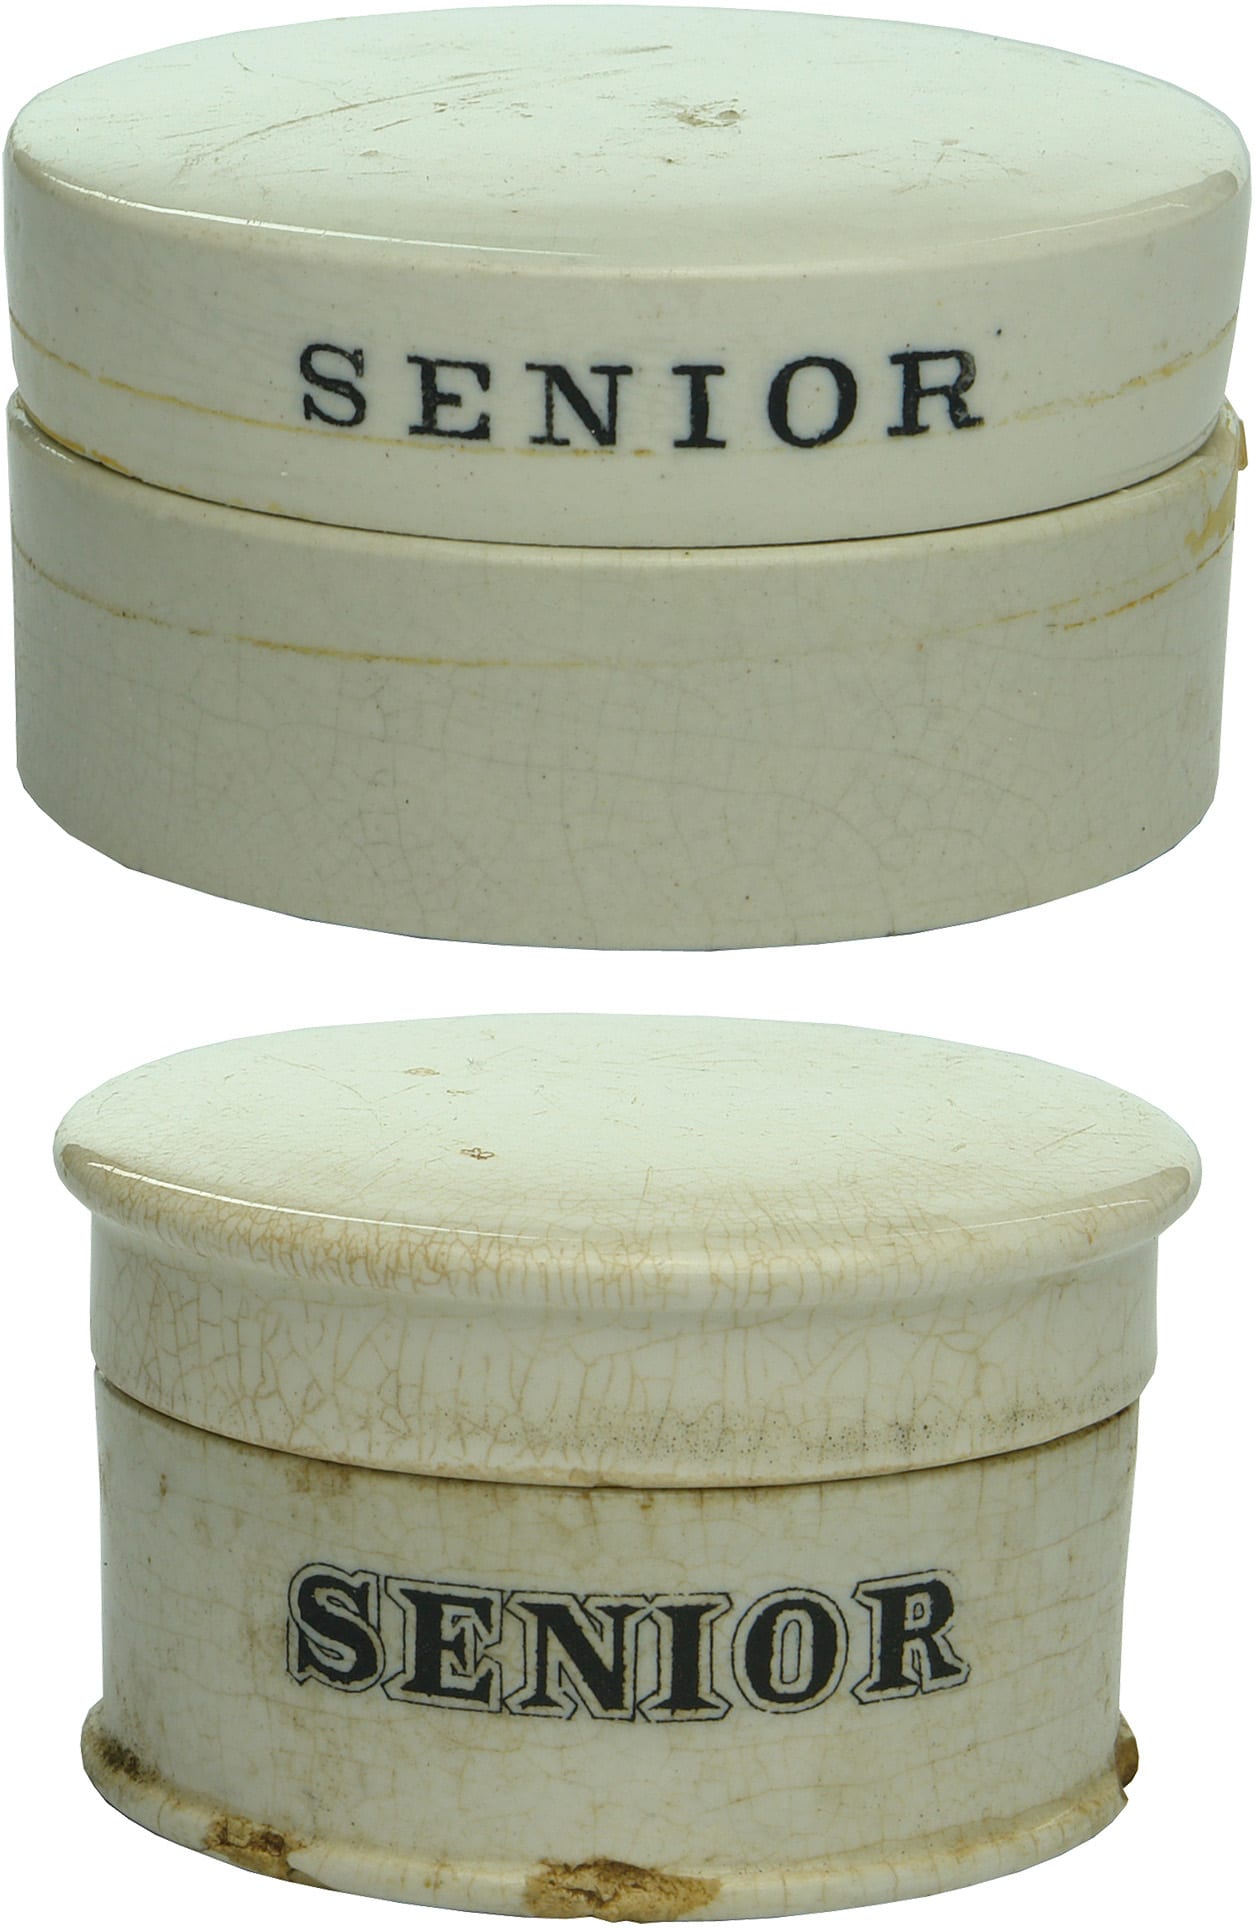 Senior Pharmacy Sydney Ceramic Pot